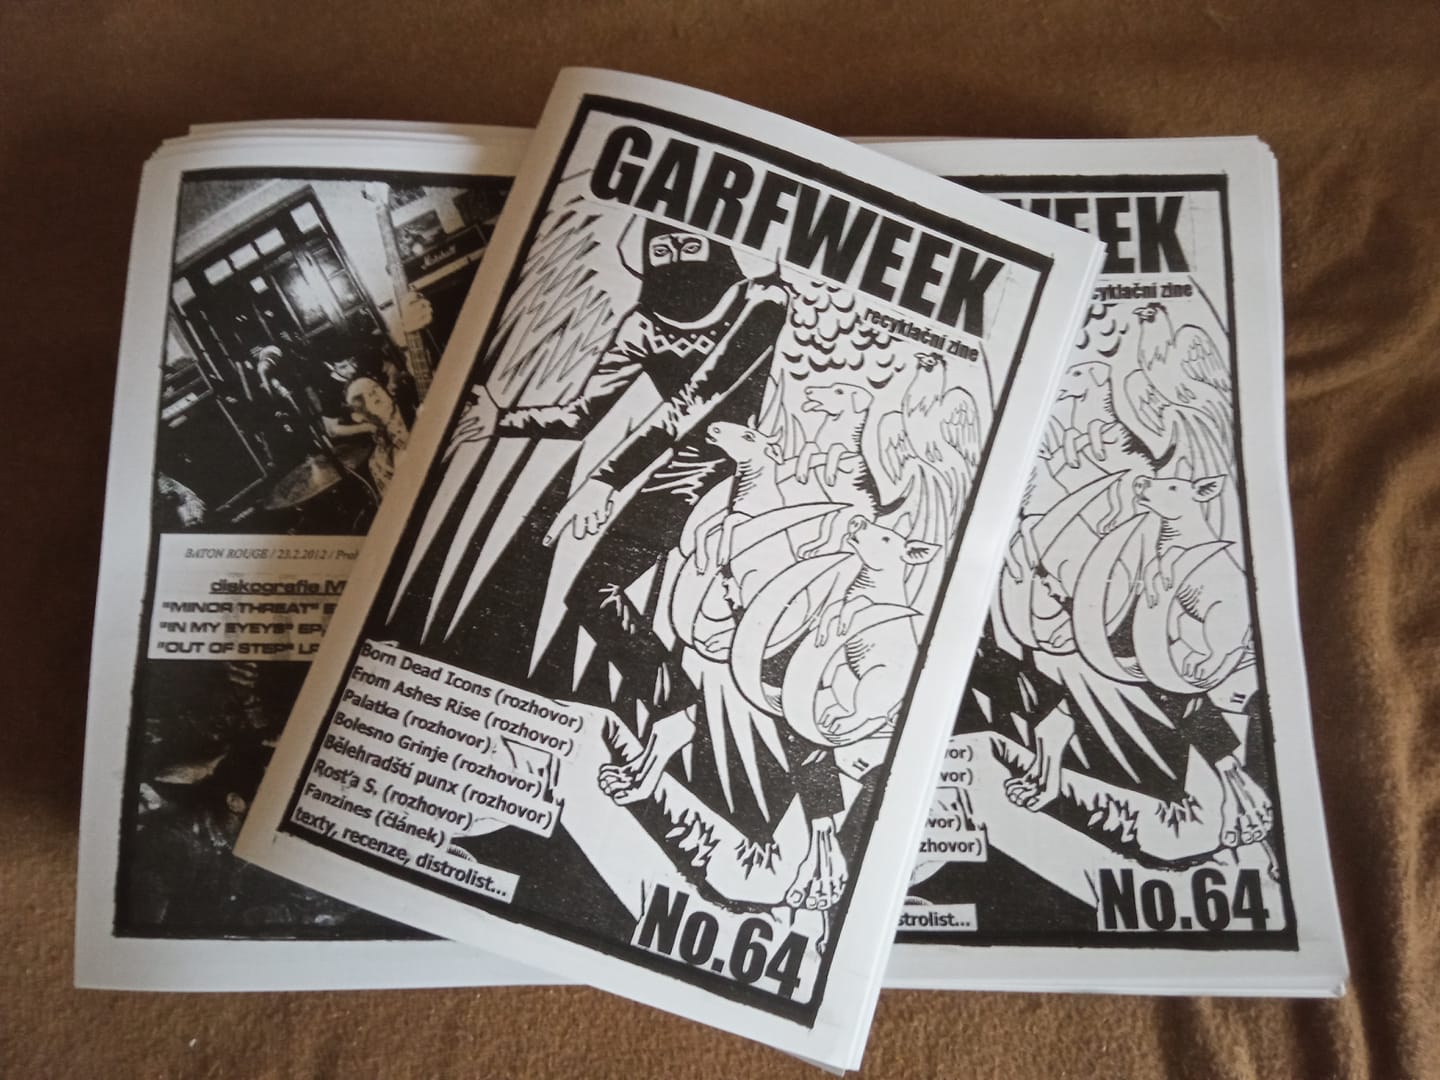 Garfweek #64